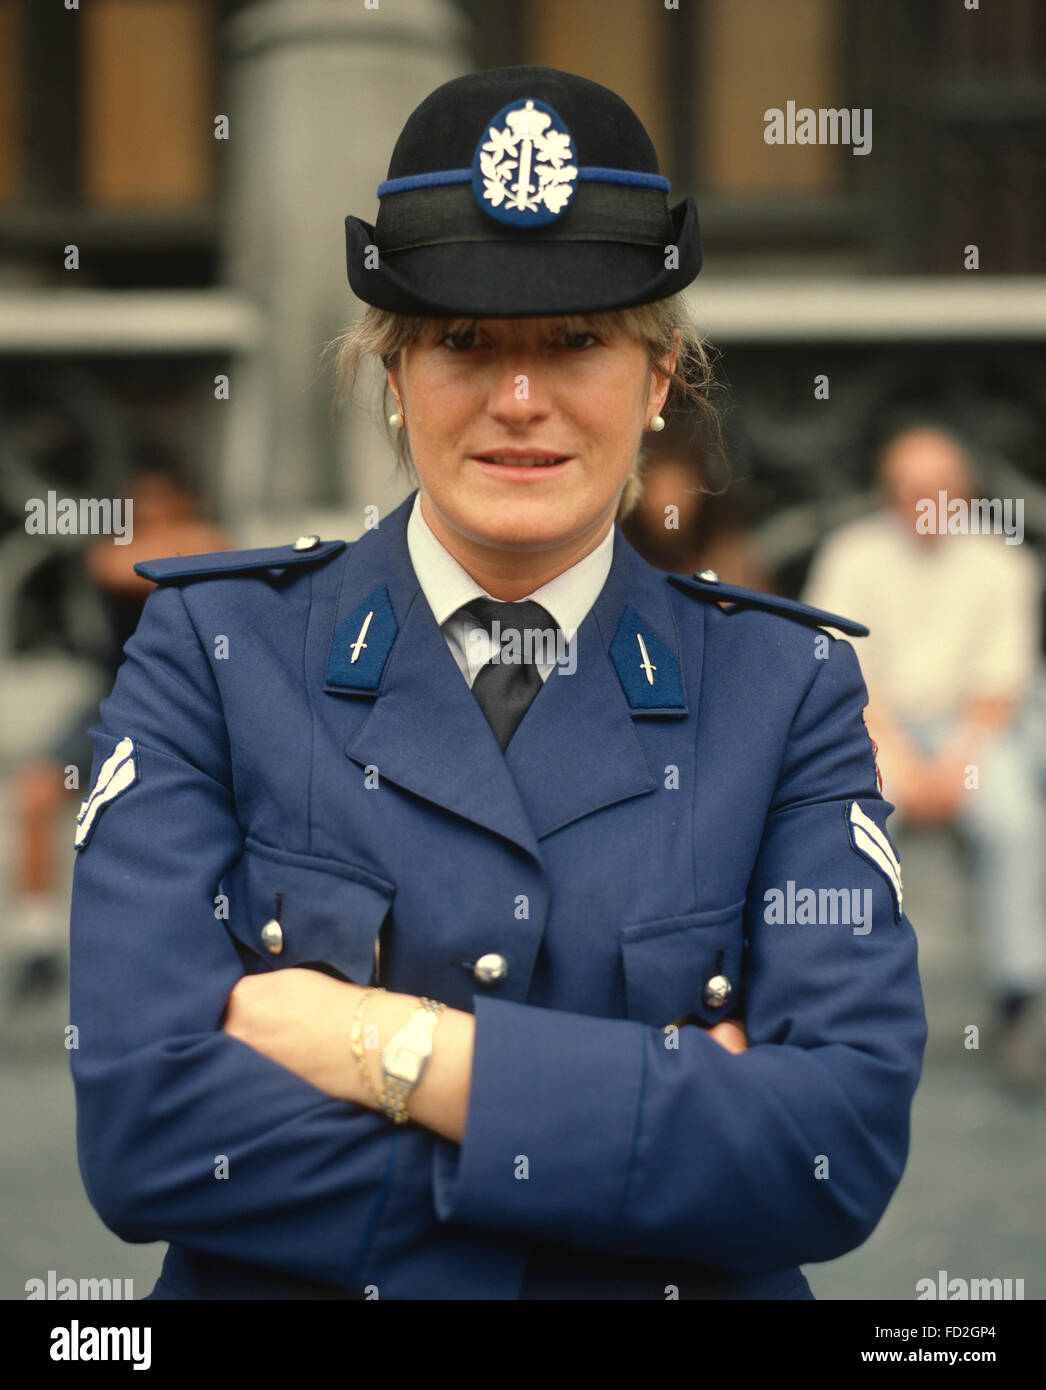 Belgique, Bruxelles, une policière en uniforme Photo Stock - Alamy